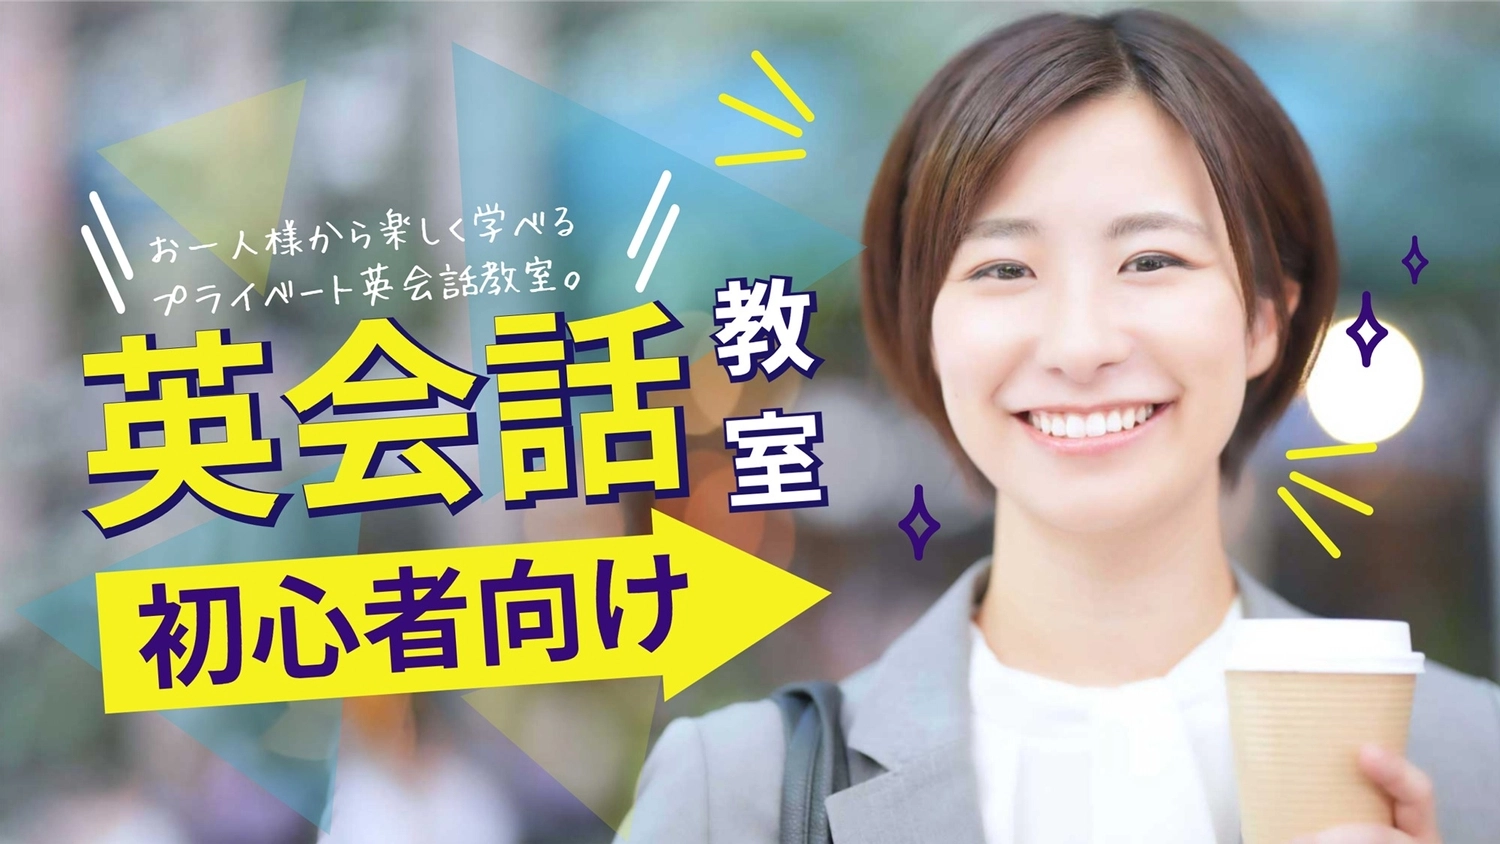 笑顔の女性写真の英会話教室サムネイル, tiếng Nhật, nhân vật, Châu Á, Youtube Thumbnail mẫu